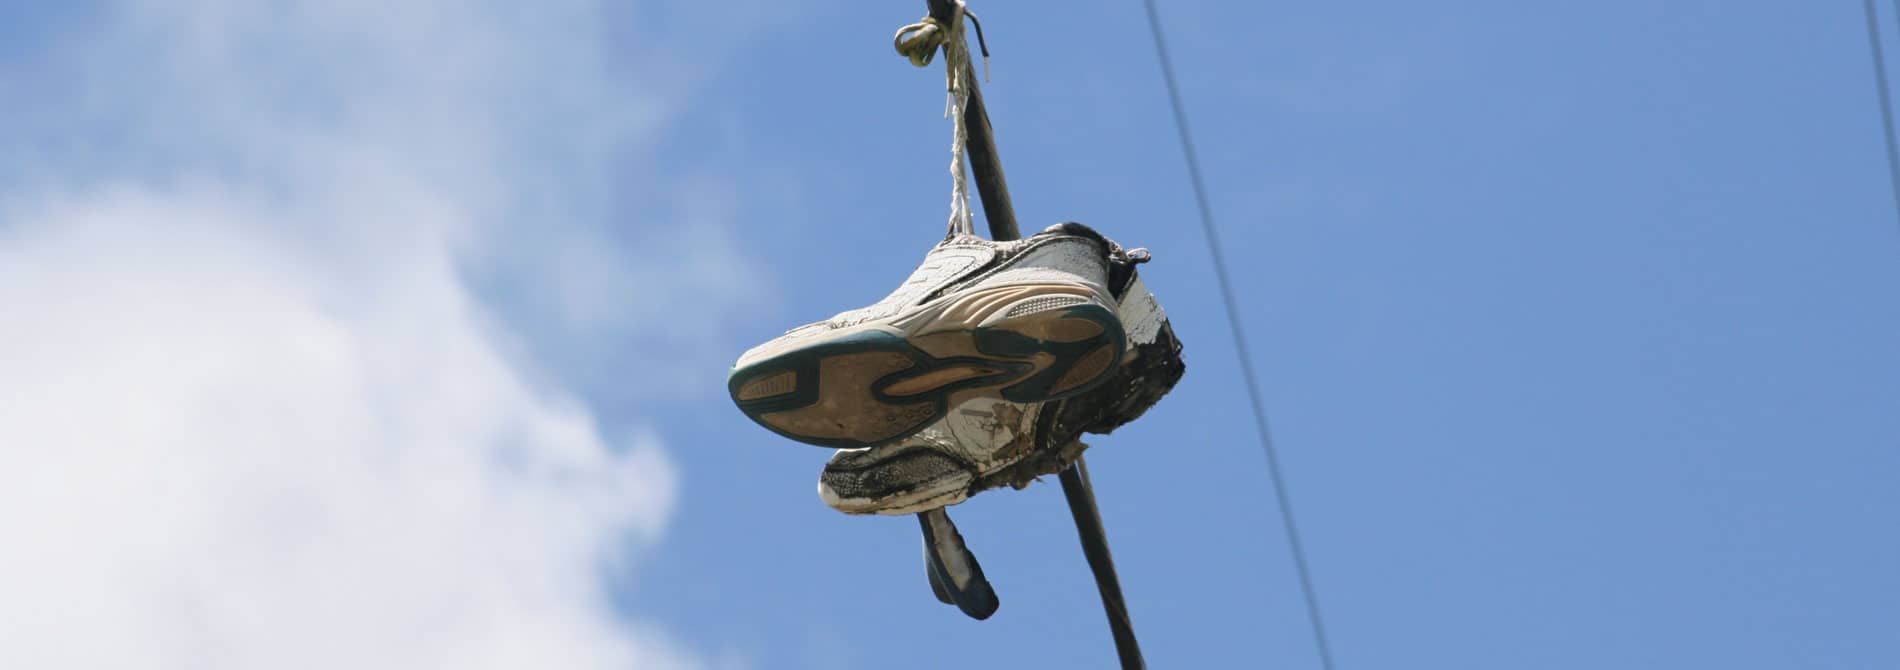 Hanging Up My Running Shoes – Alumni Testimonial